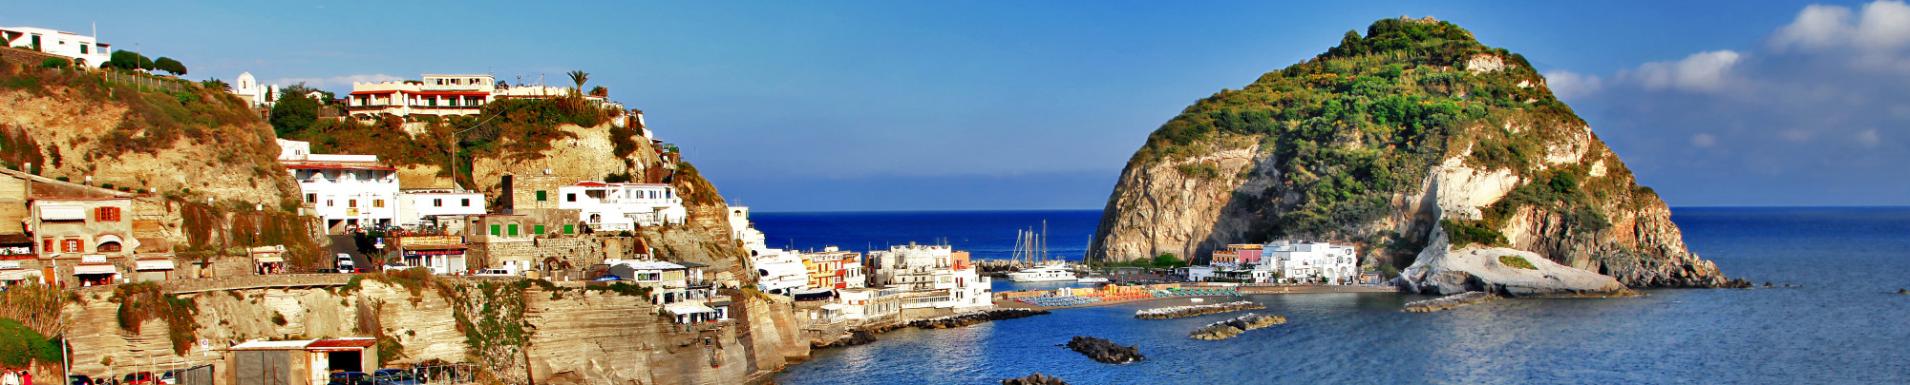 Ferientage um den 25. April und 1. Mai auf Ischia: Paket mit Hotel + Spa